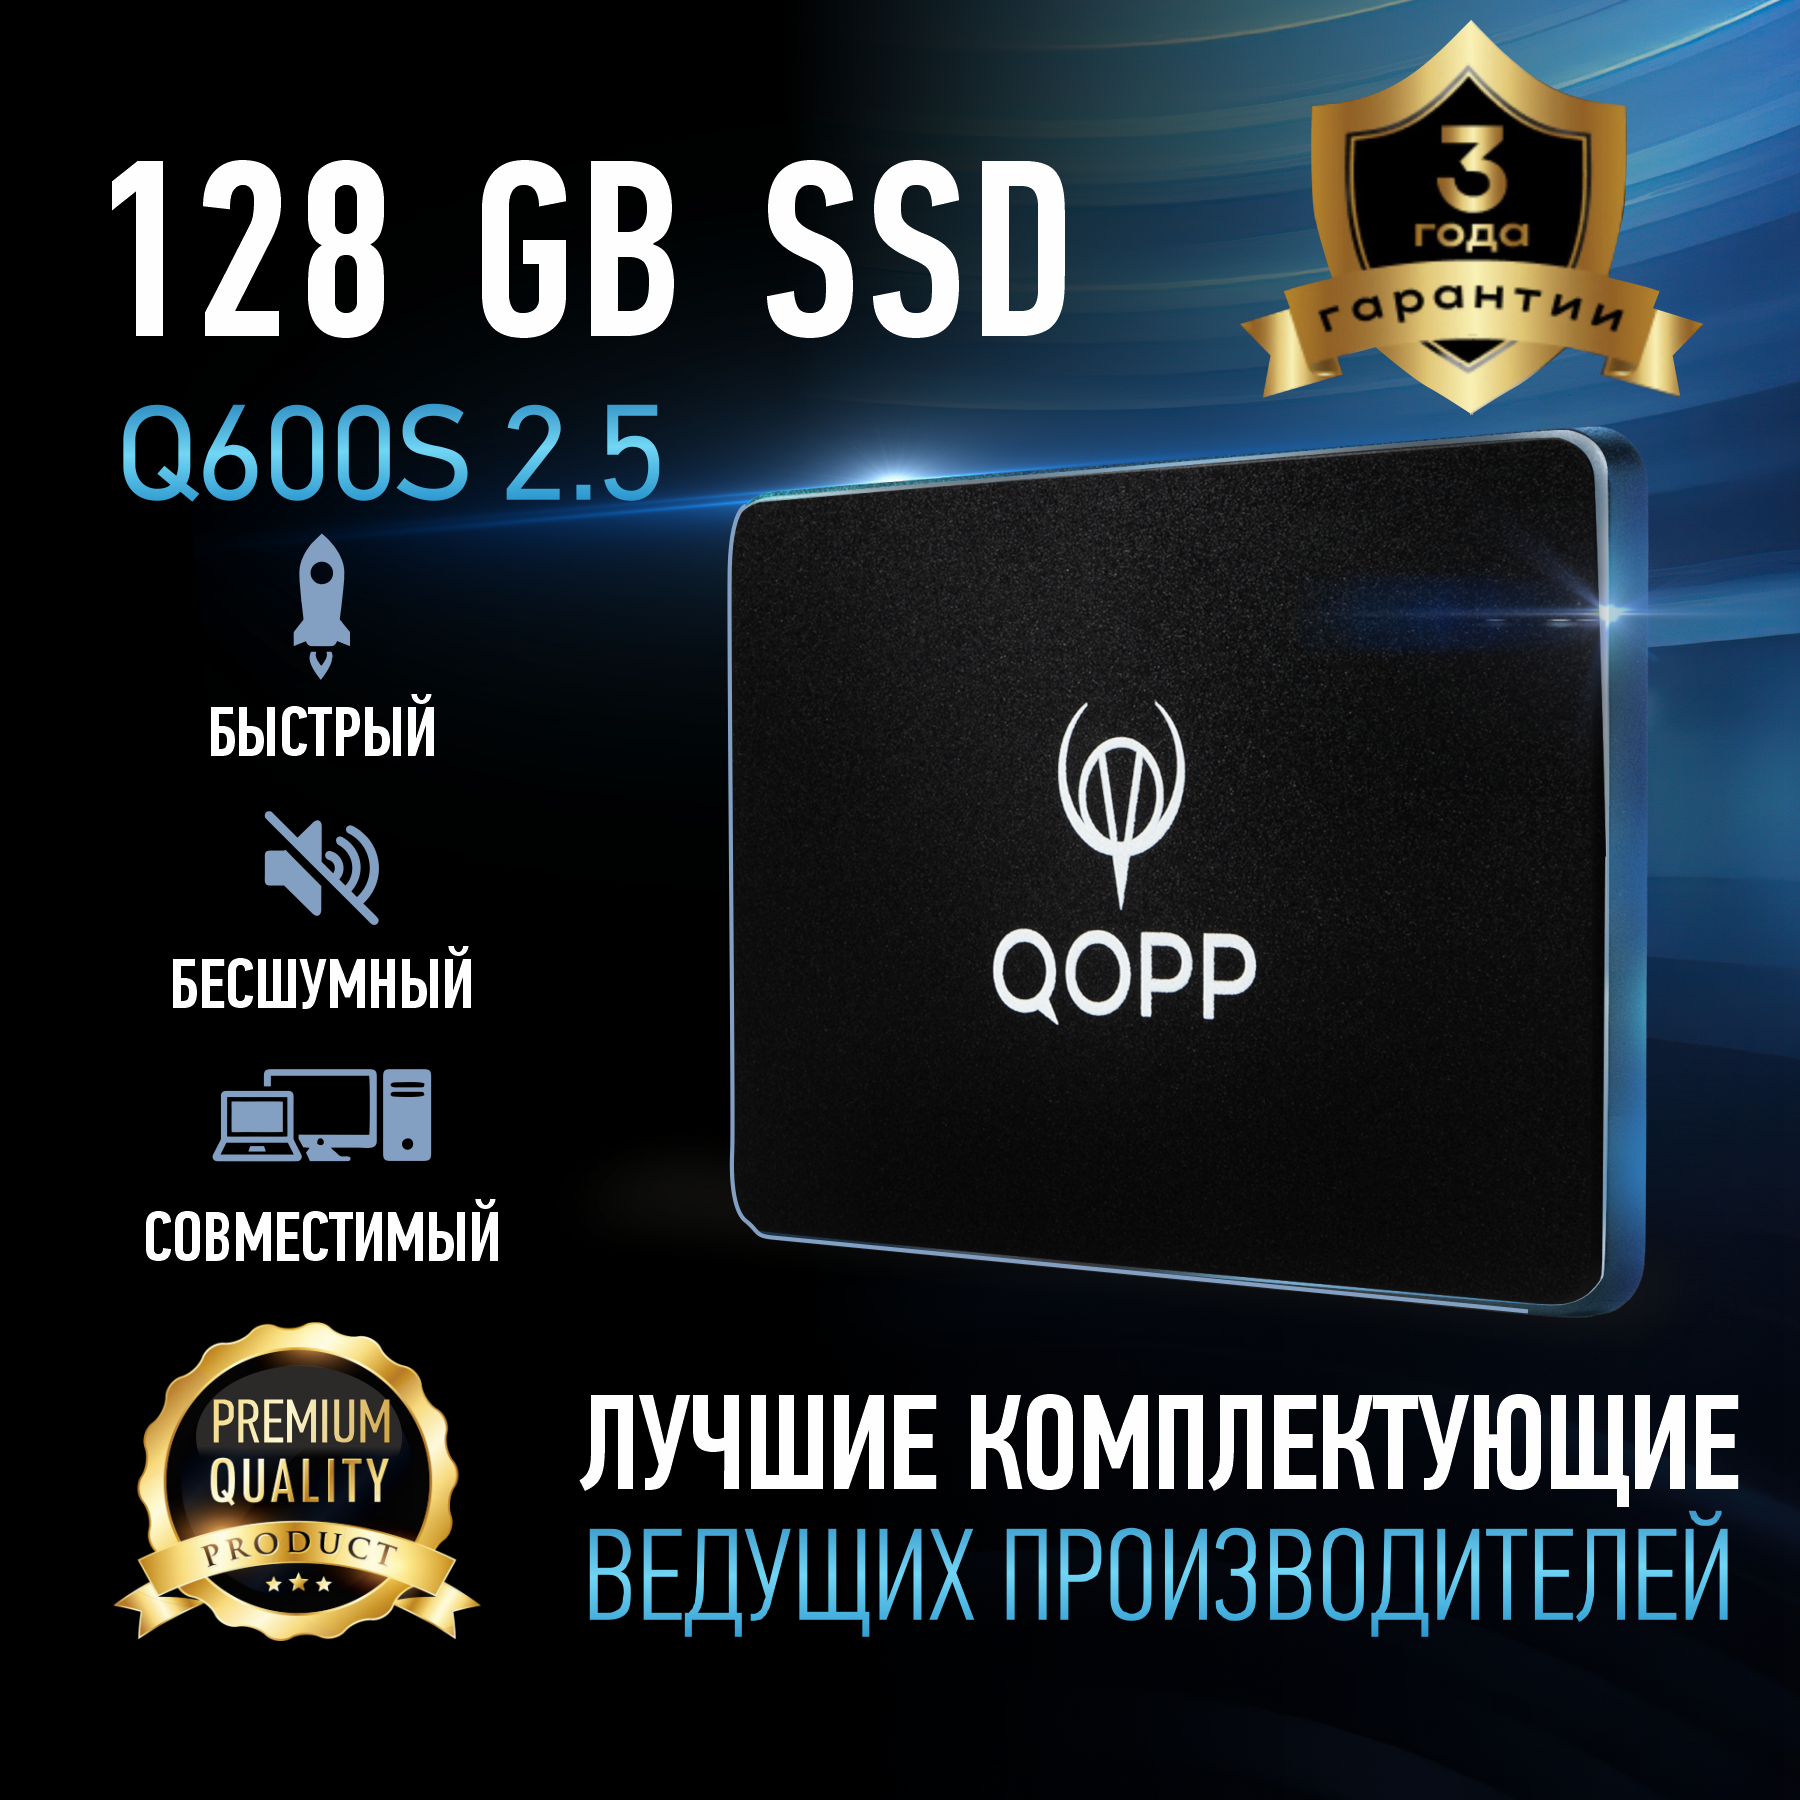 128 GB Внутренний SSD накопитель QOPP 2.5 SATA 3 6.0 Гбит/с жесткий диск для ноутбука и компьютера